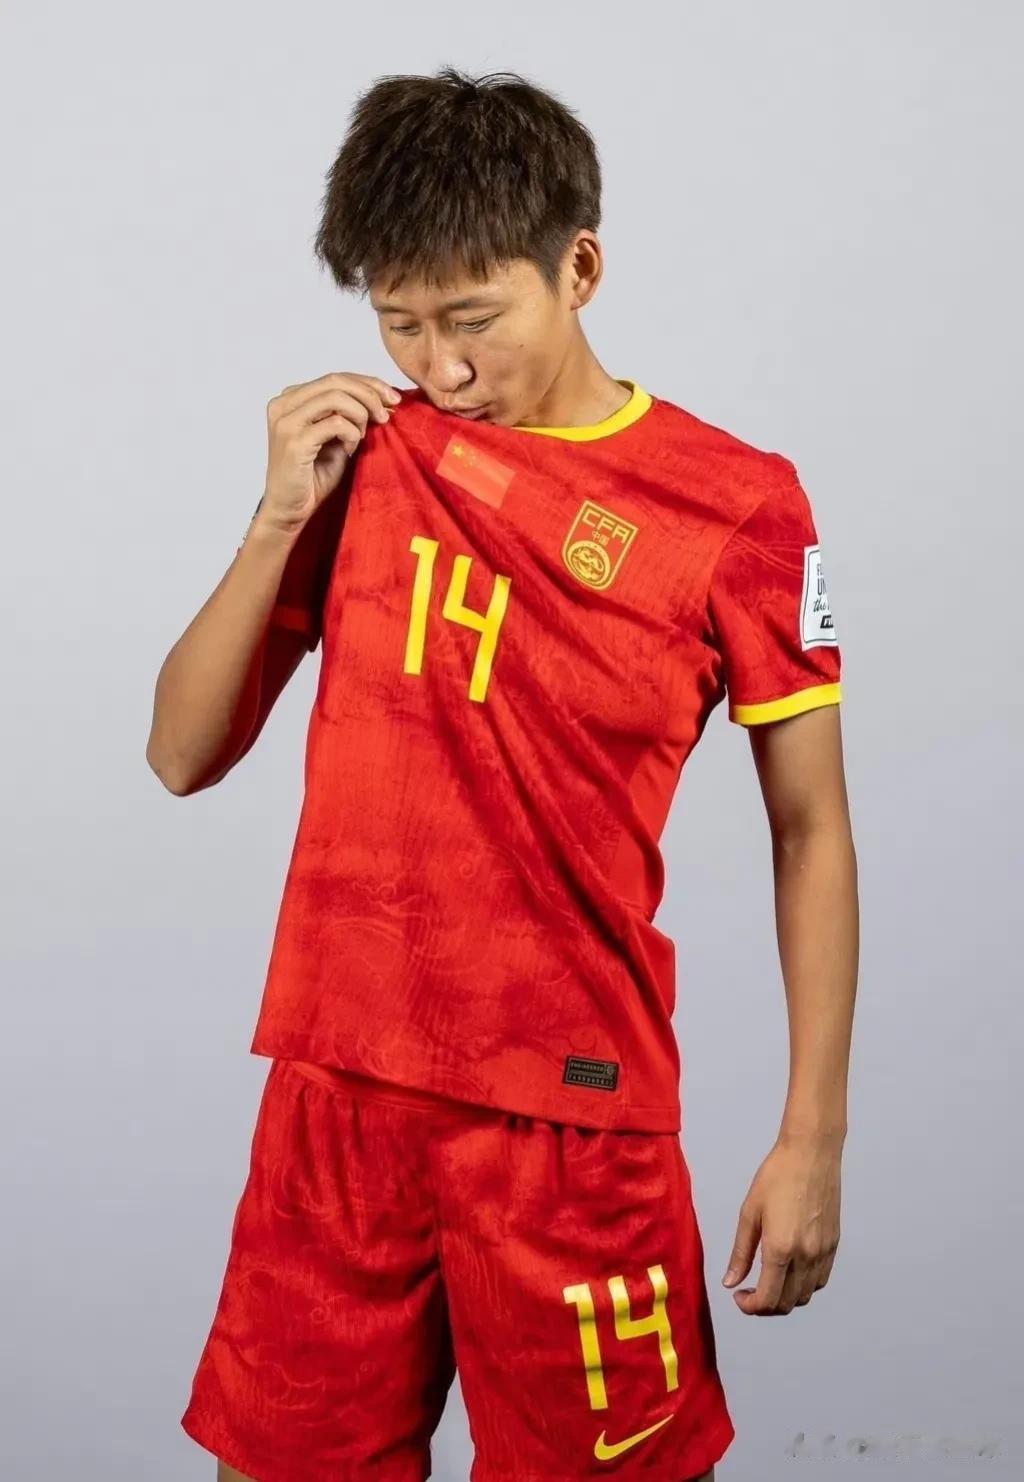 插播一条足球，给中国姑娘加油！祝中国姑娘22号世界杯首场凯旋！

分享一下姑娘们(6)